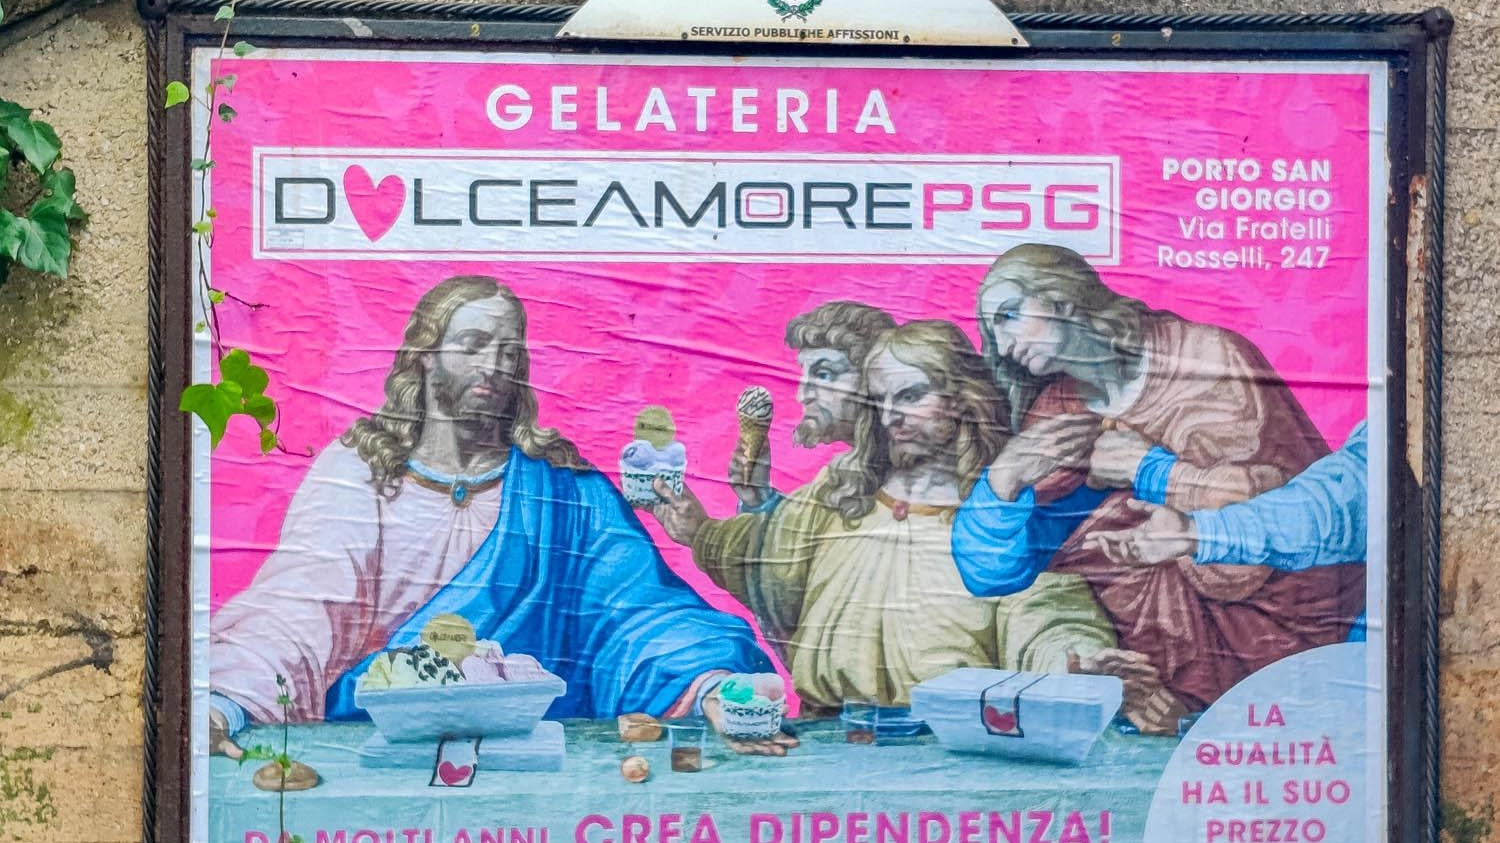 La Curia Arcivescovile critica un manifesto pubblicitario di una gelateria a Porto San Giorgio che raffigura l'Ultima Cena con gelato, definendolo inopportuno e potenzialmente offensivo per la fede cristiana durante la Settimana Santa.